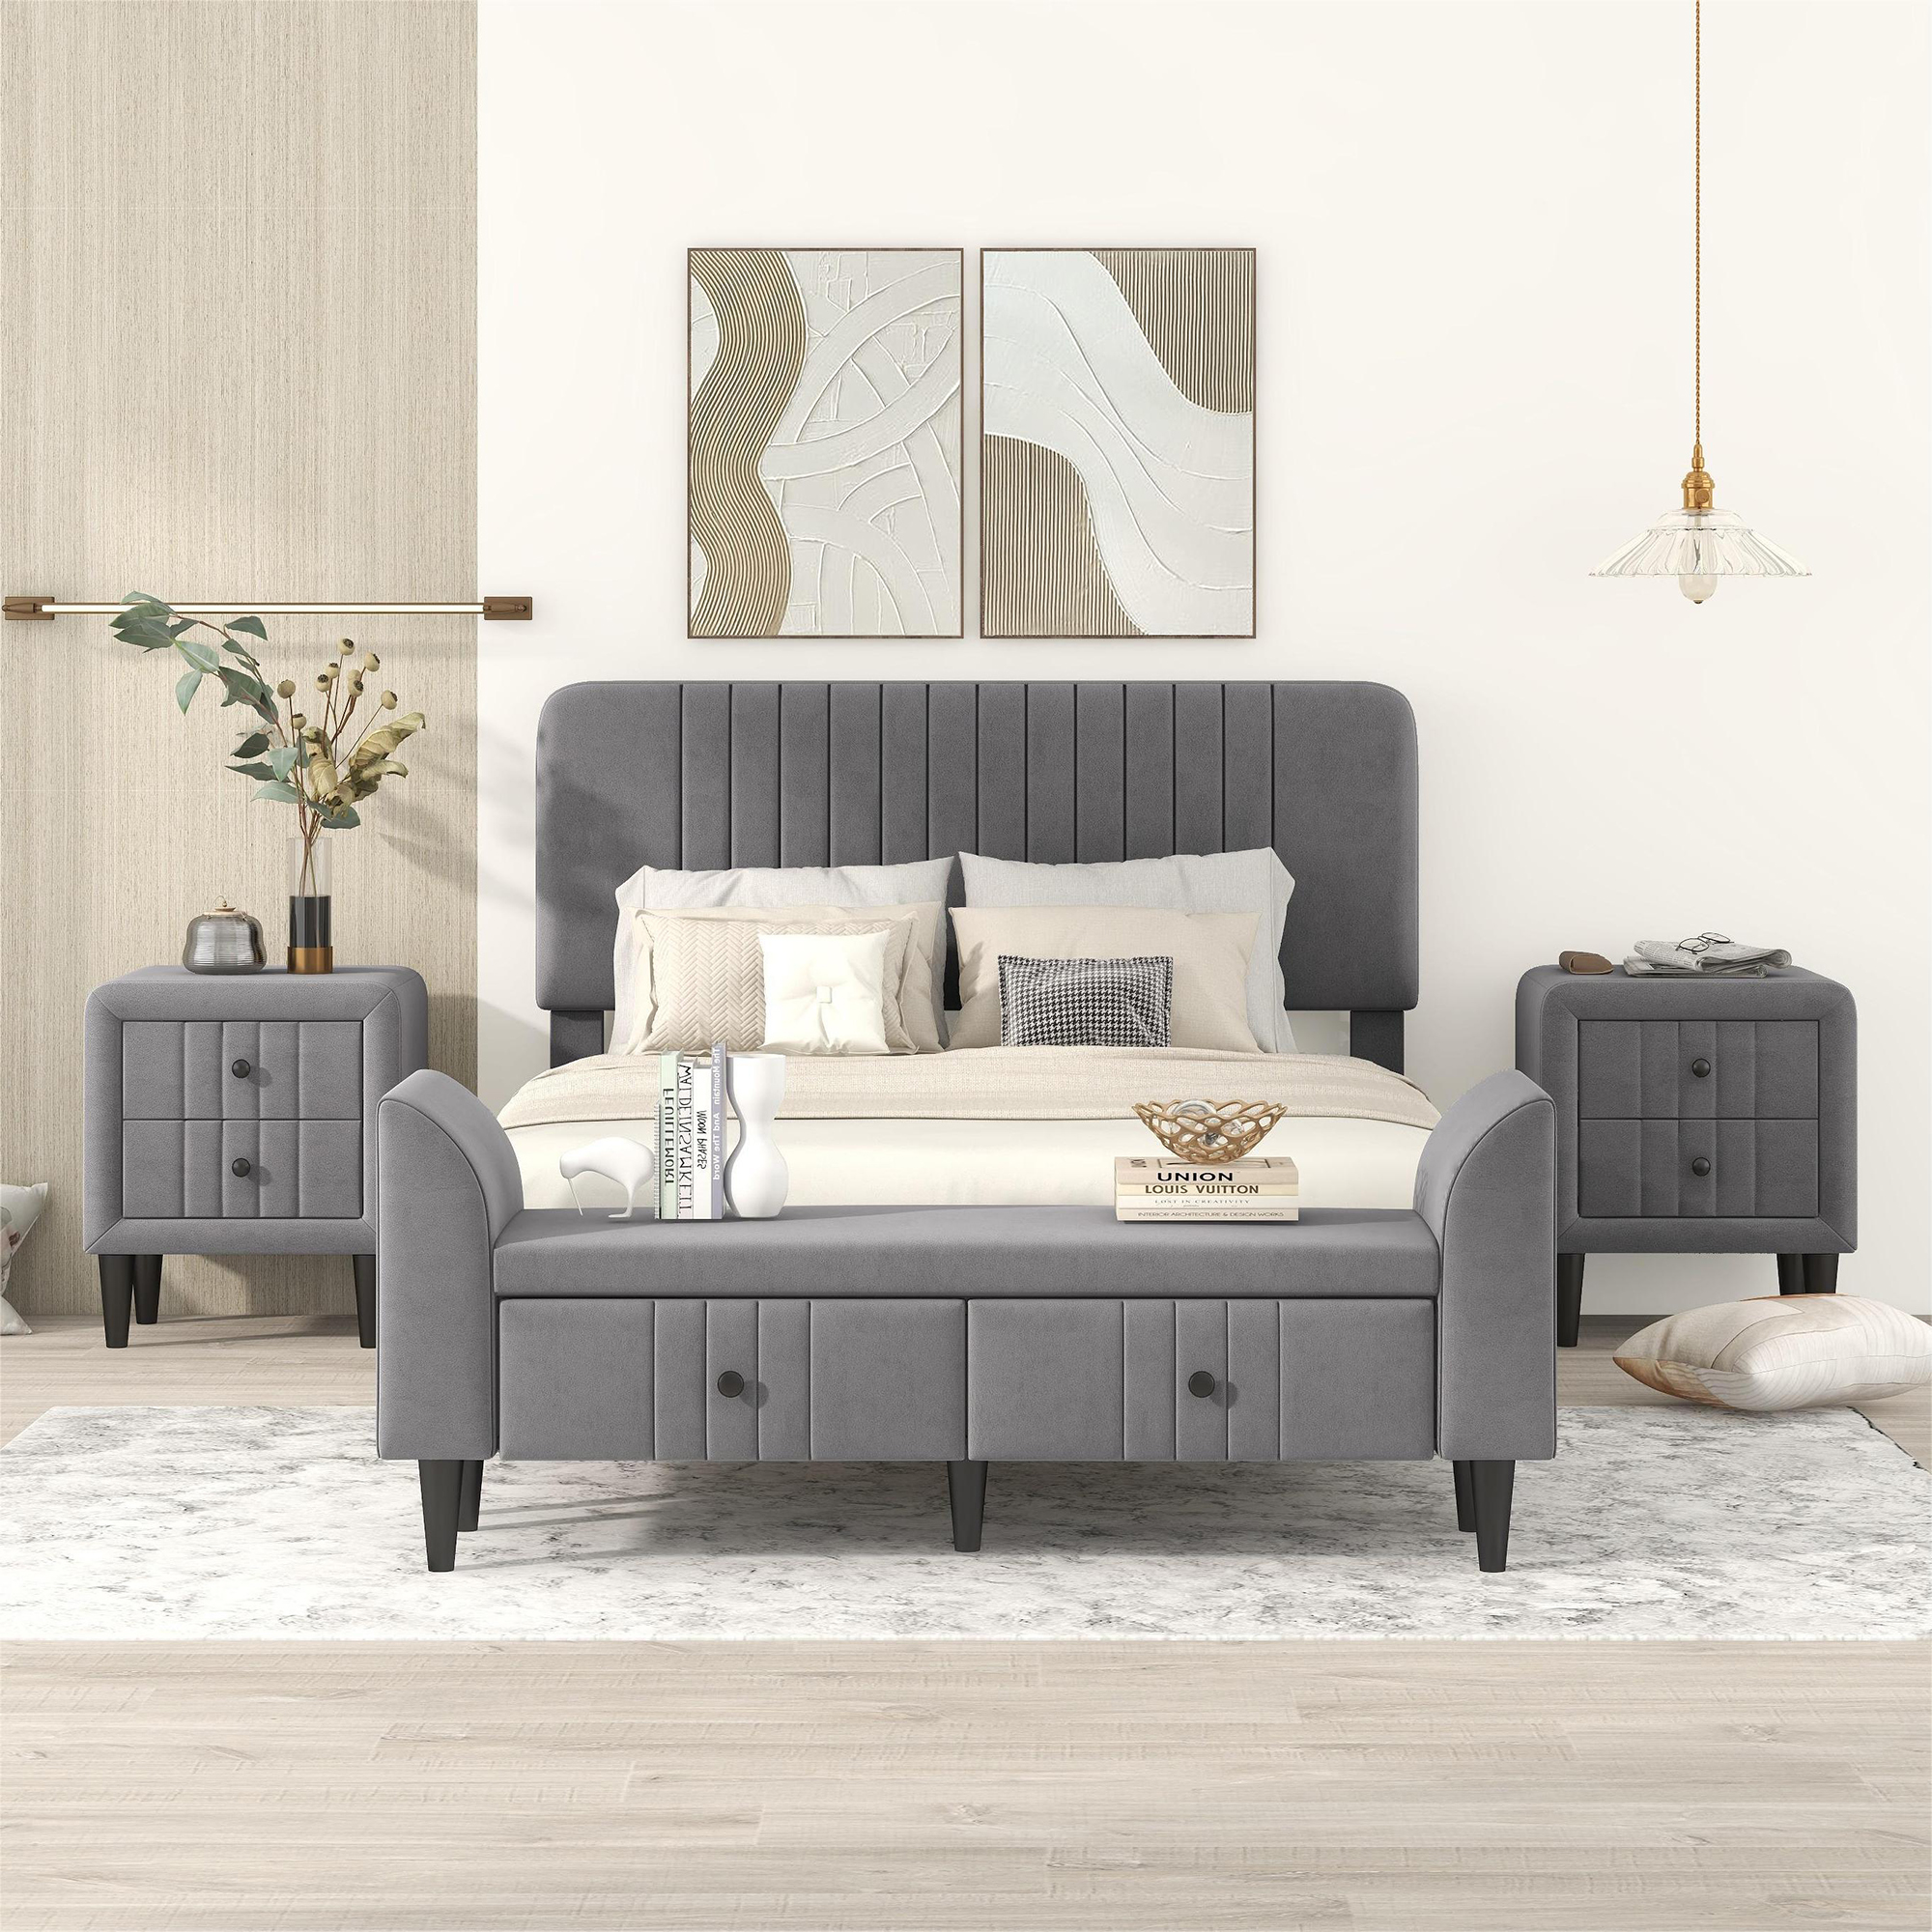 4-Pieces Bedroom Sets, Full Size Upholstered Platform Bed - HL000011AAE